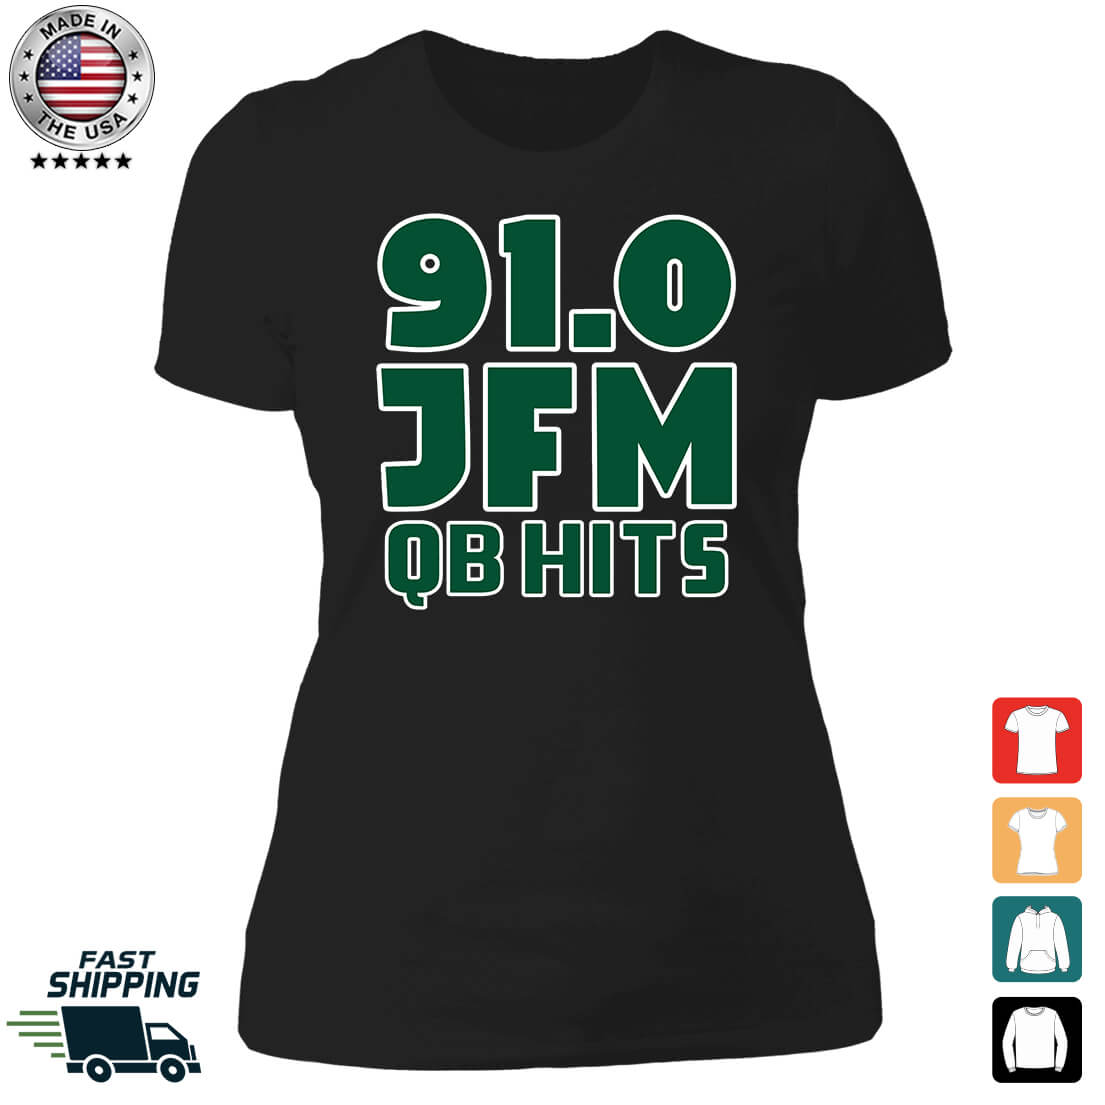 91.0 JFM QB Hist Ladies Boyfriend Shirt